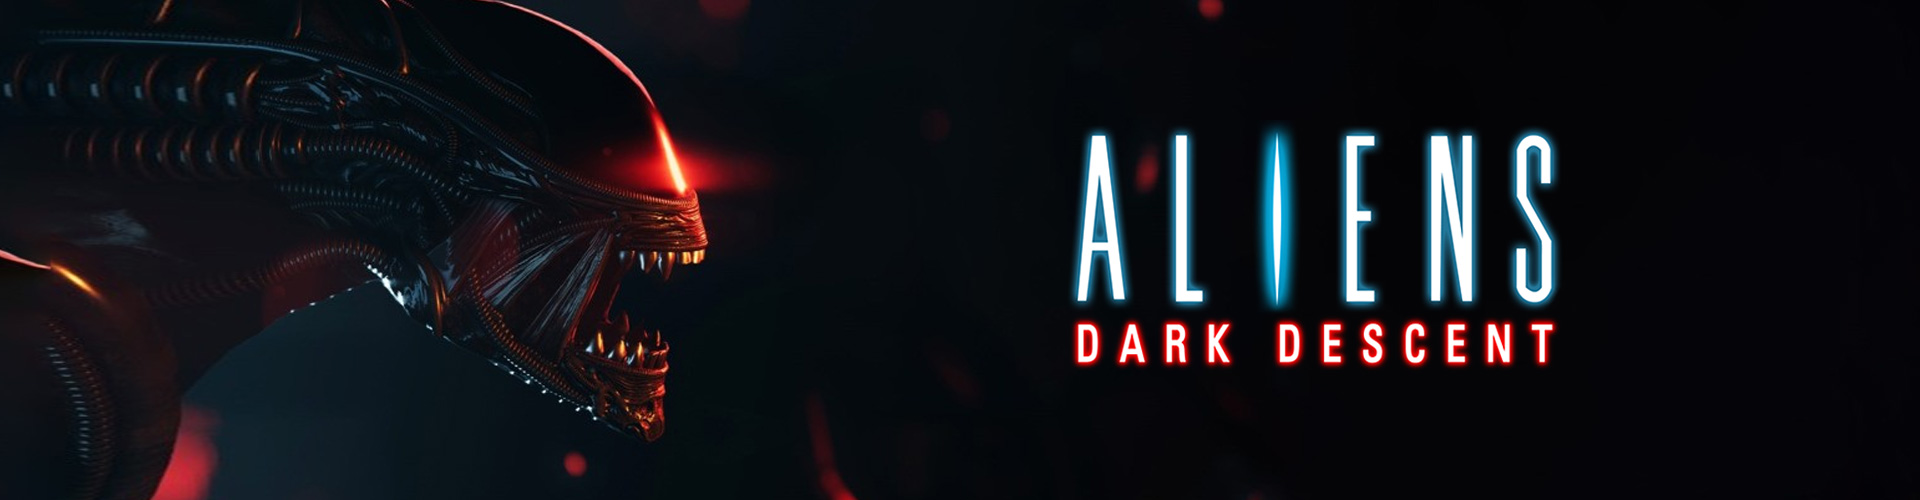 Aliens: Dark Descent Ã© un gioco horror e di strategia